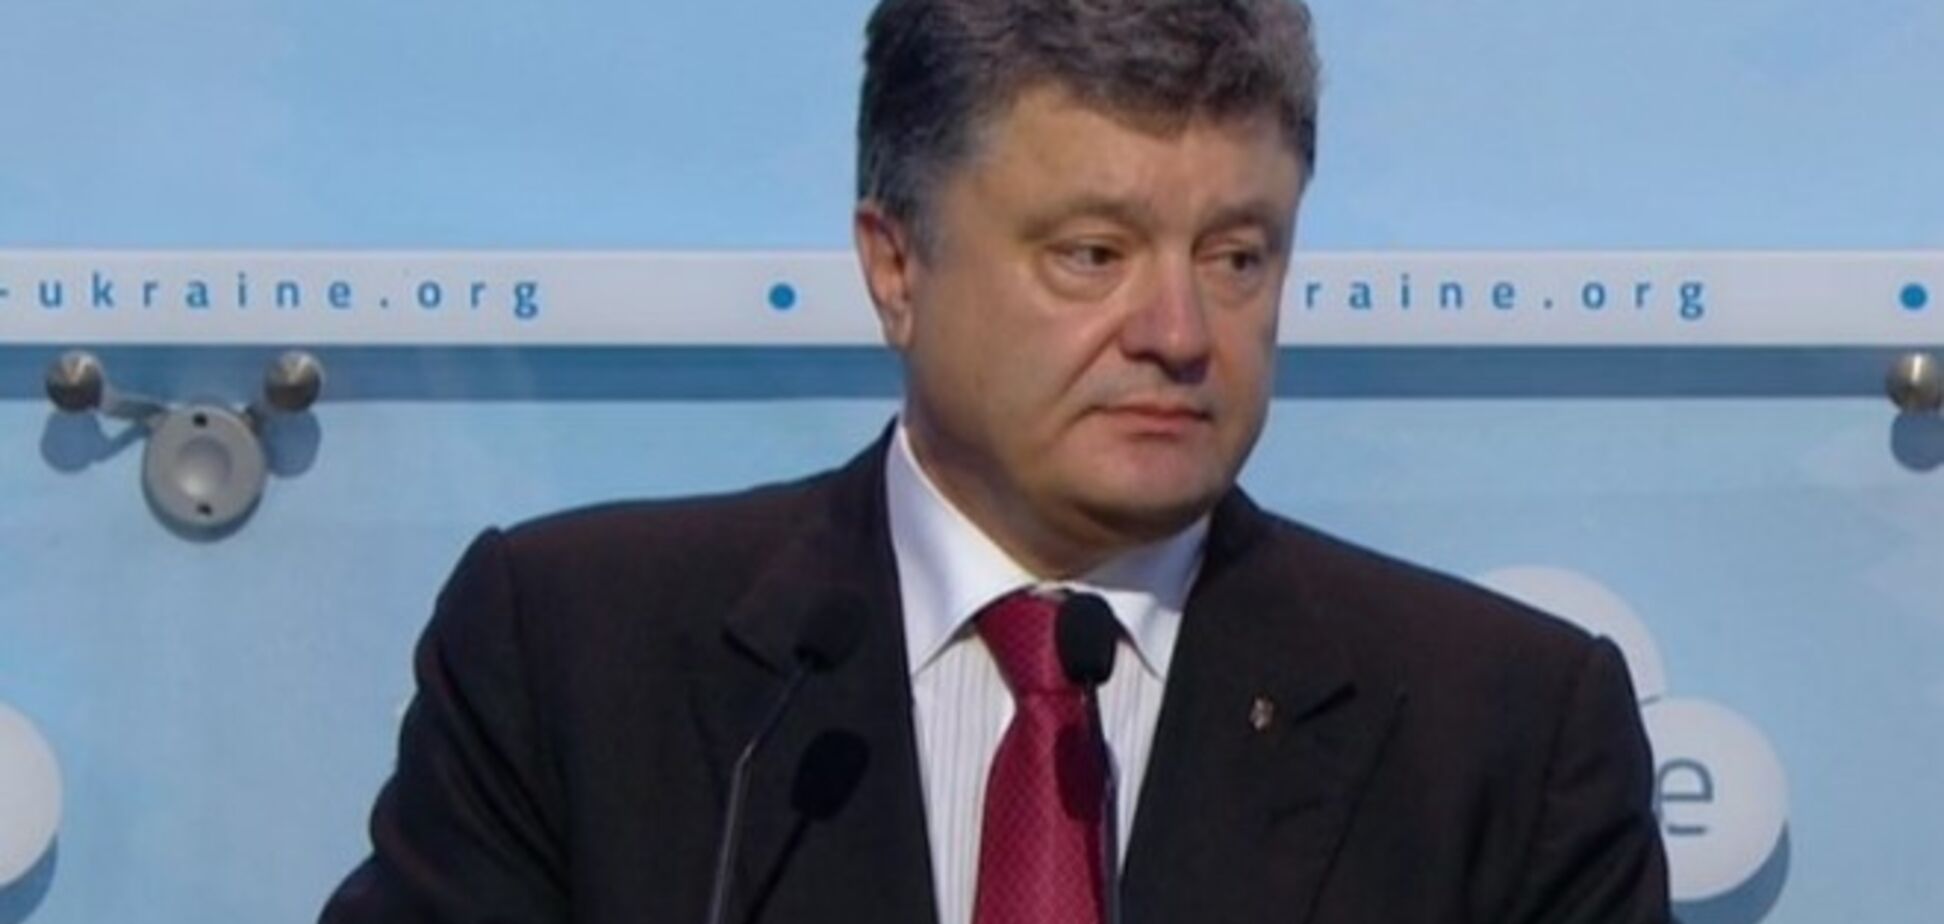 Порошенко пообещал Донбассу особый статус по примеру польских гмин